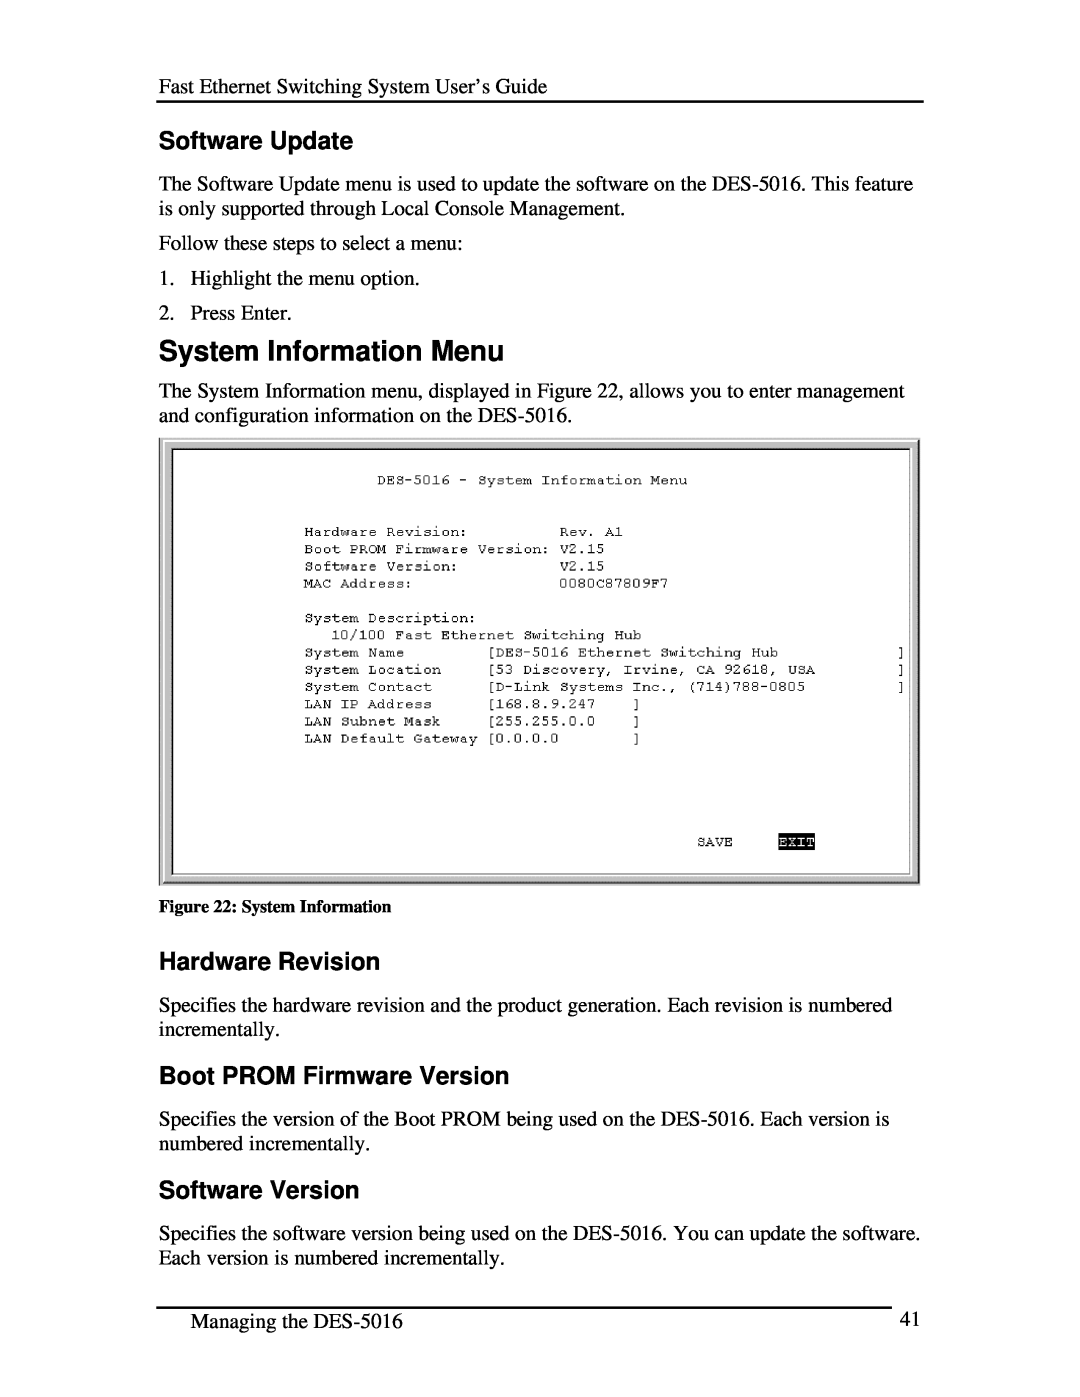 D-Link DES-5016 System Information Menu, Software Update, Hardware Revision, Boot PROM Firmware Version, Software Version 